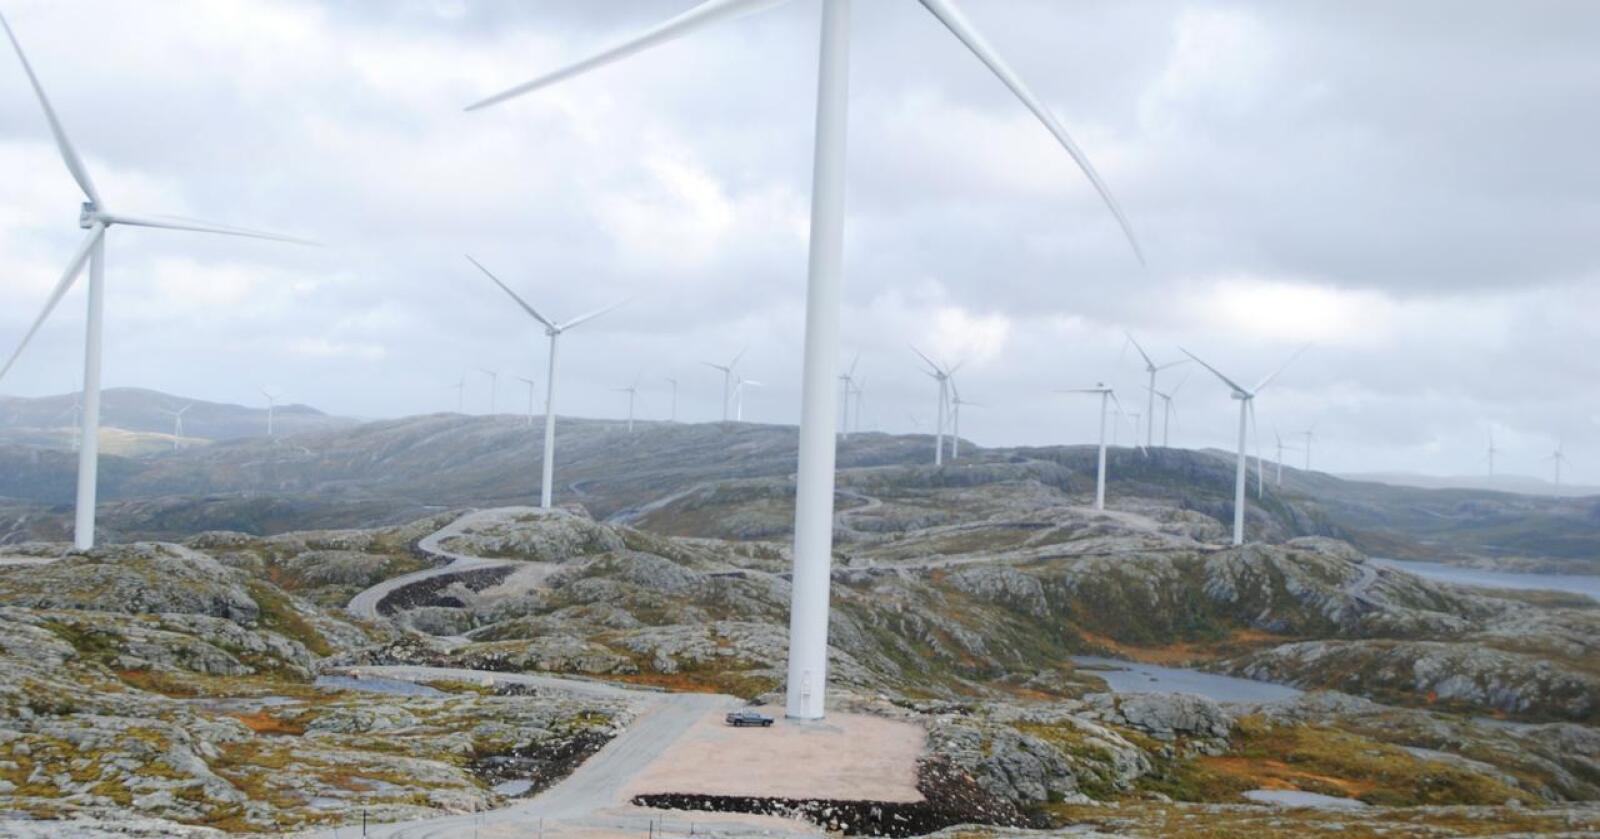 Fornybart: Ny energi må styres - og fordeles, skriver kronikøren. Foto: Lars Bilit Hagen